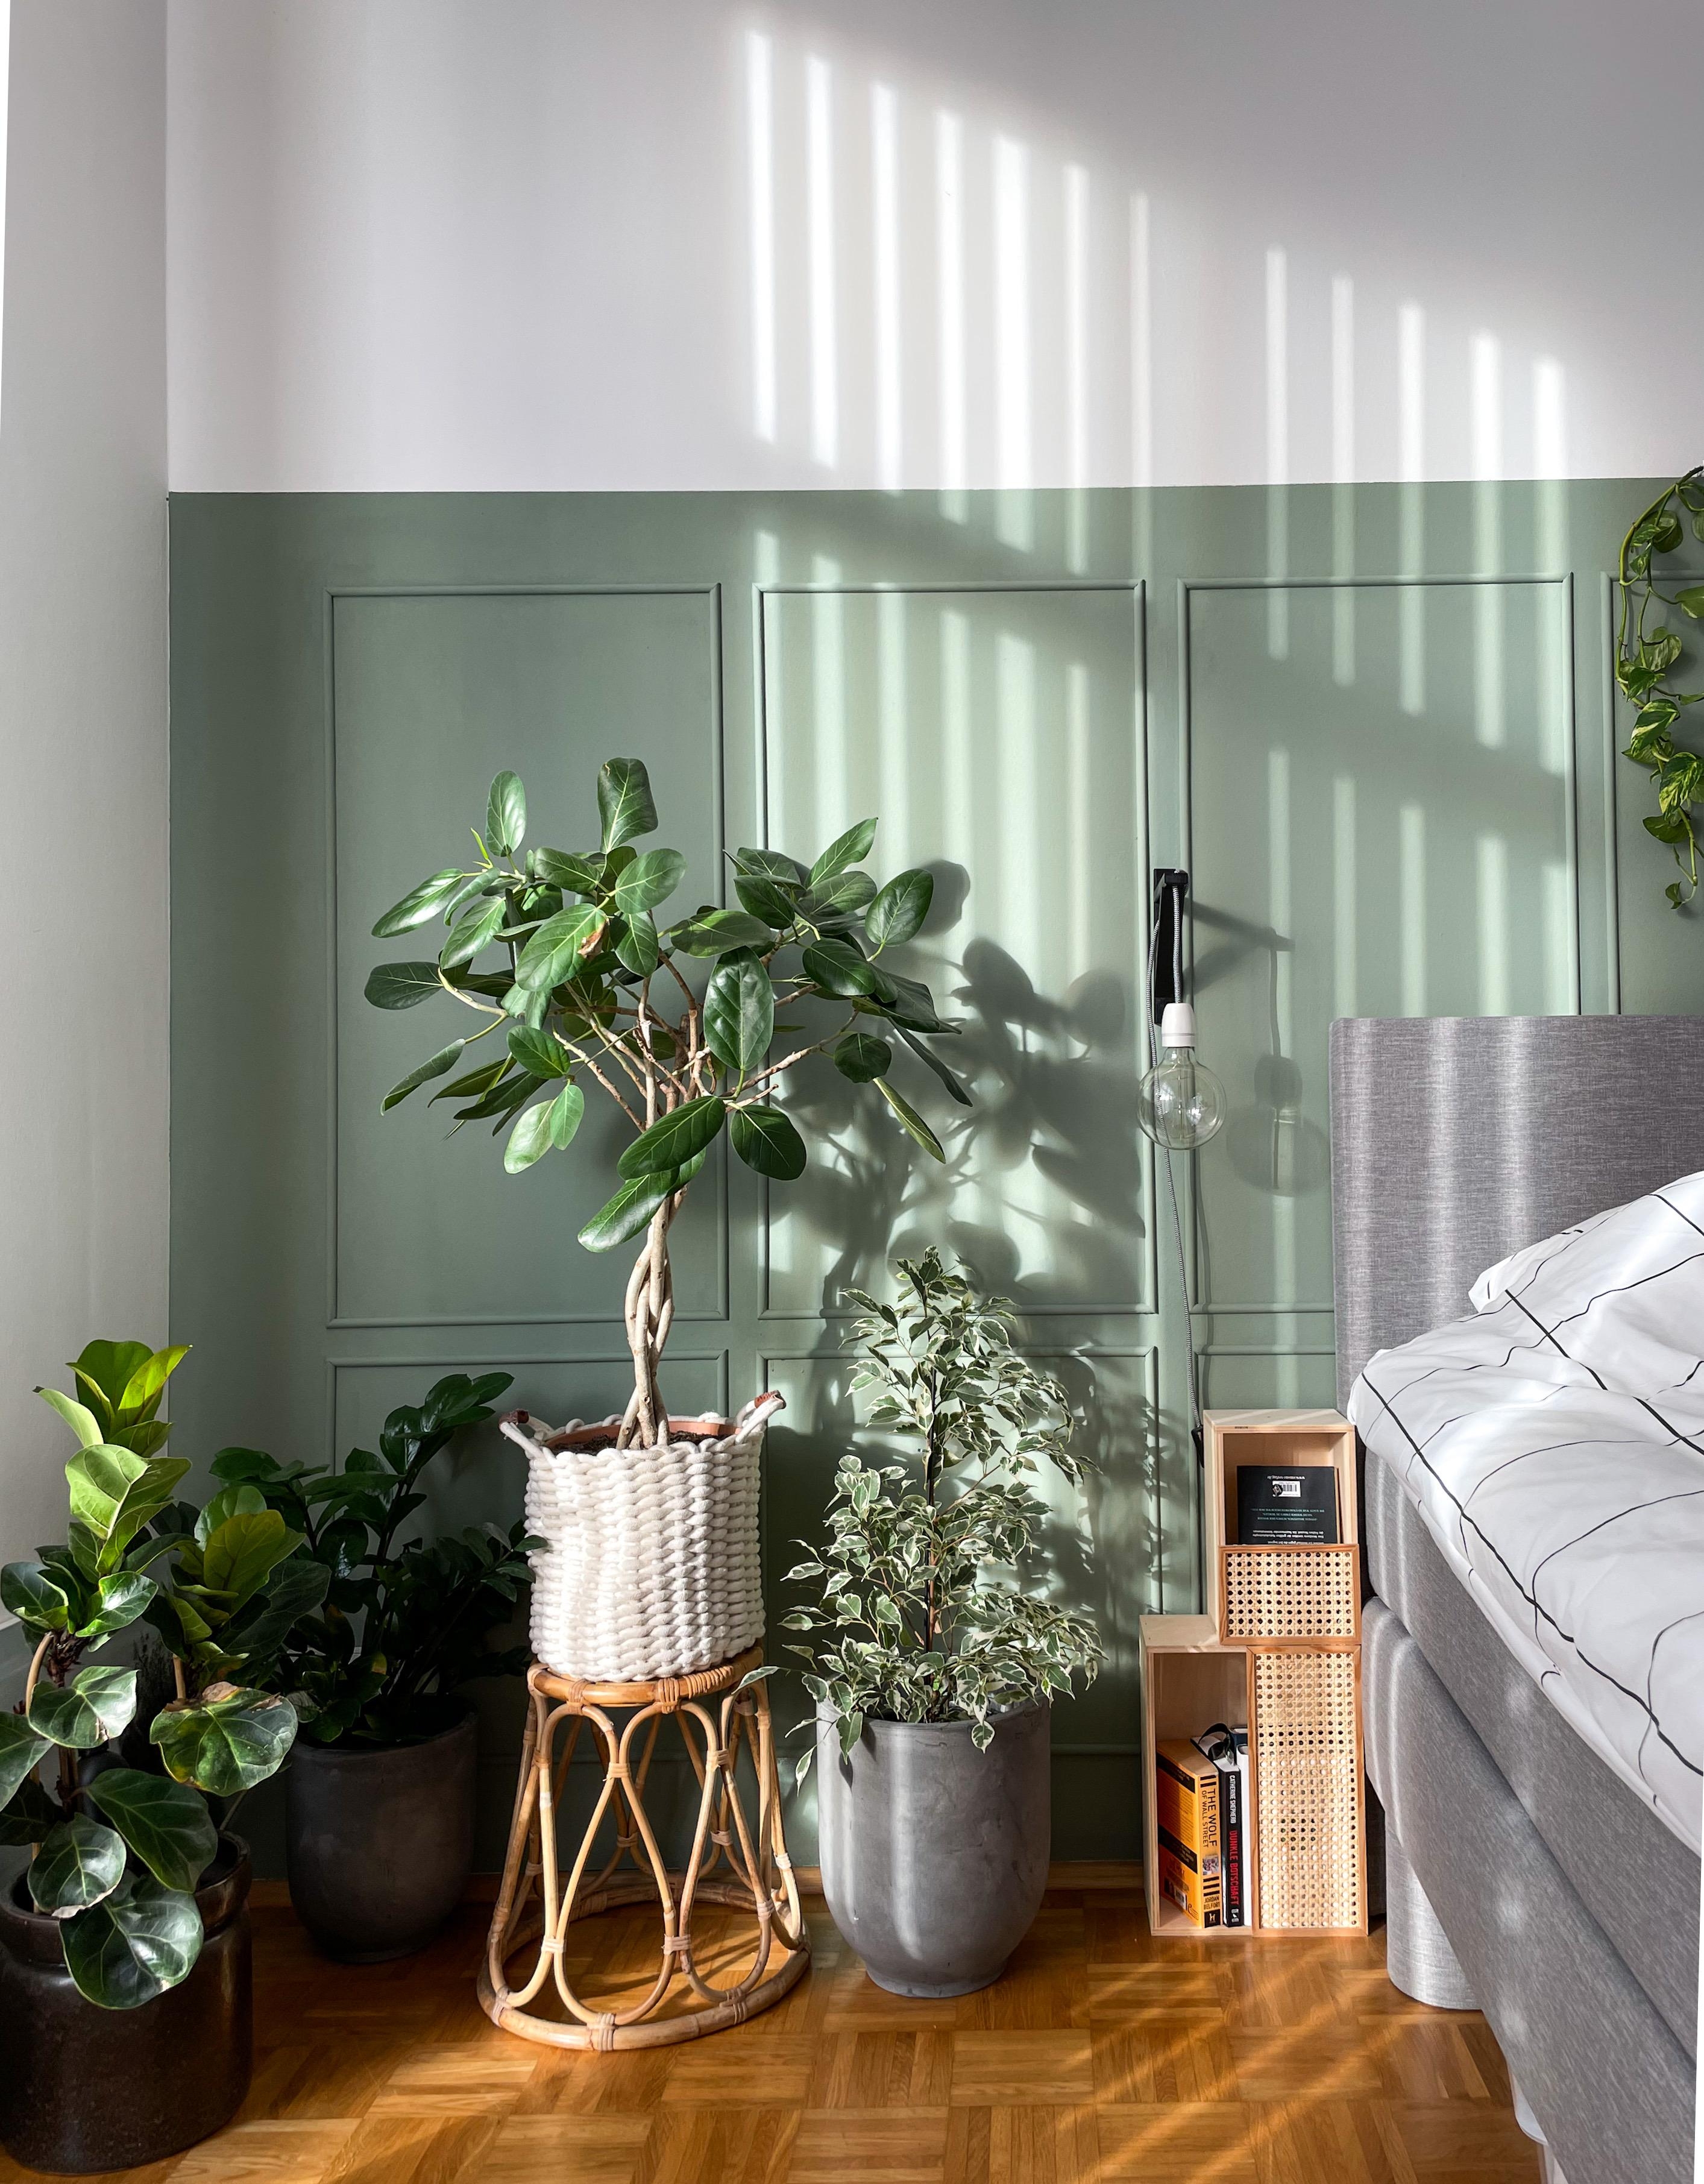 Sun and stripes

#Schlafzimmer #Bett #Sonnenlicht #Grün #Pflanzen #Plantparty #greenliving 